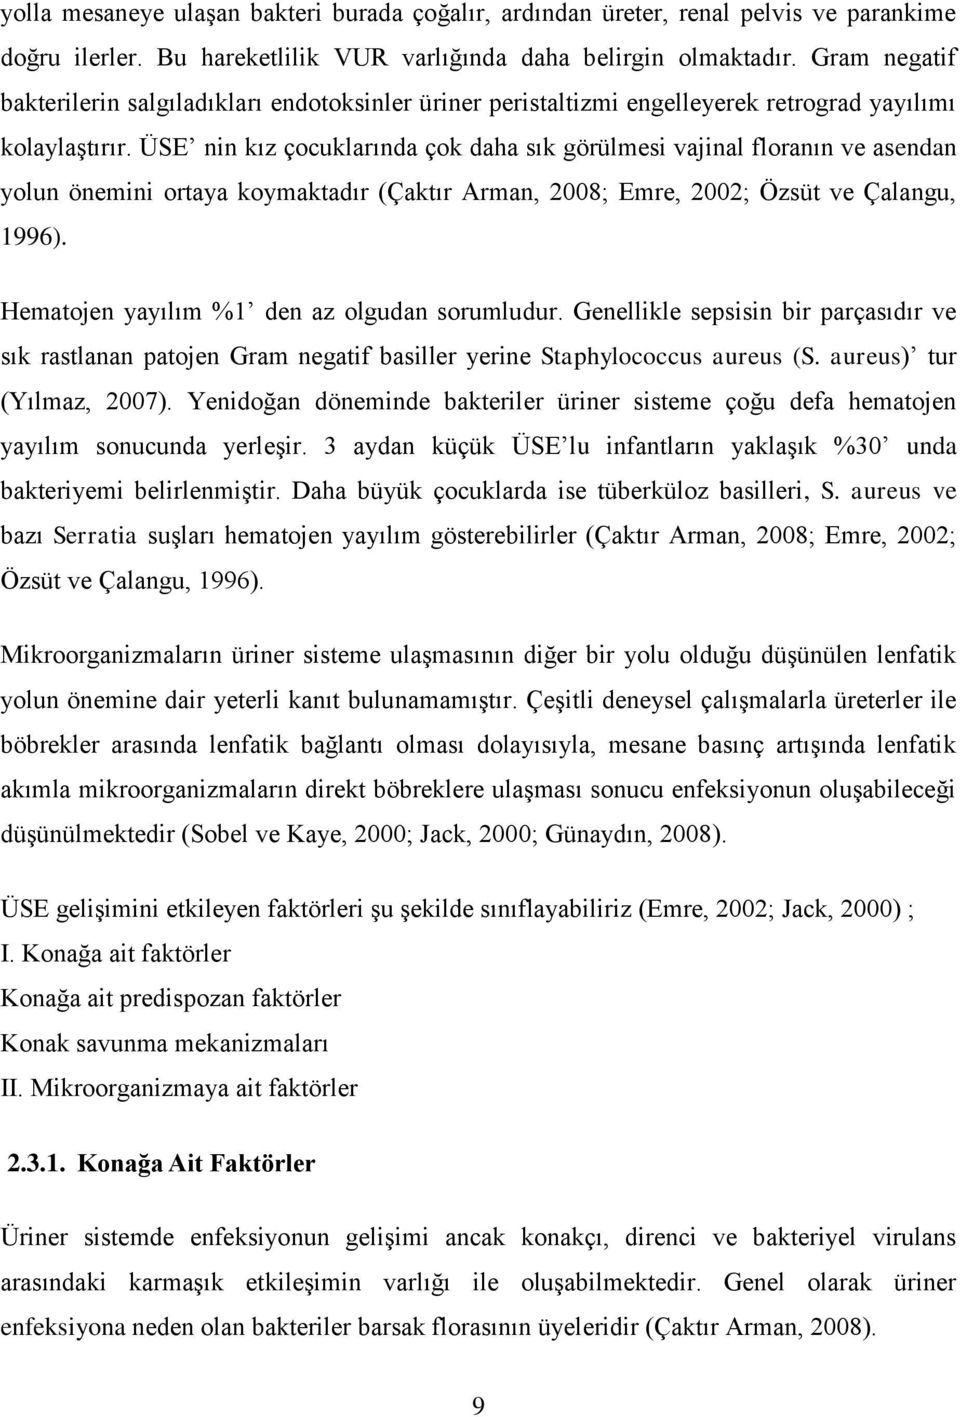 ÜSE nin kız çocuklarında çok daha sık görülmesi vajinal floranın ve asendan yolun önemini ortaya koymaktadır (Çaktır Arman, 2008; Emre, 2002; Özsüt ve Çalangu, 1996).